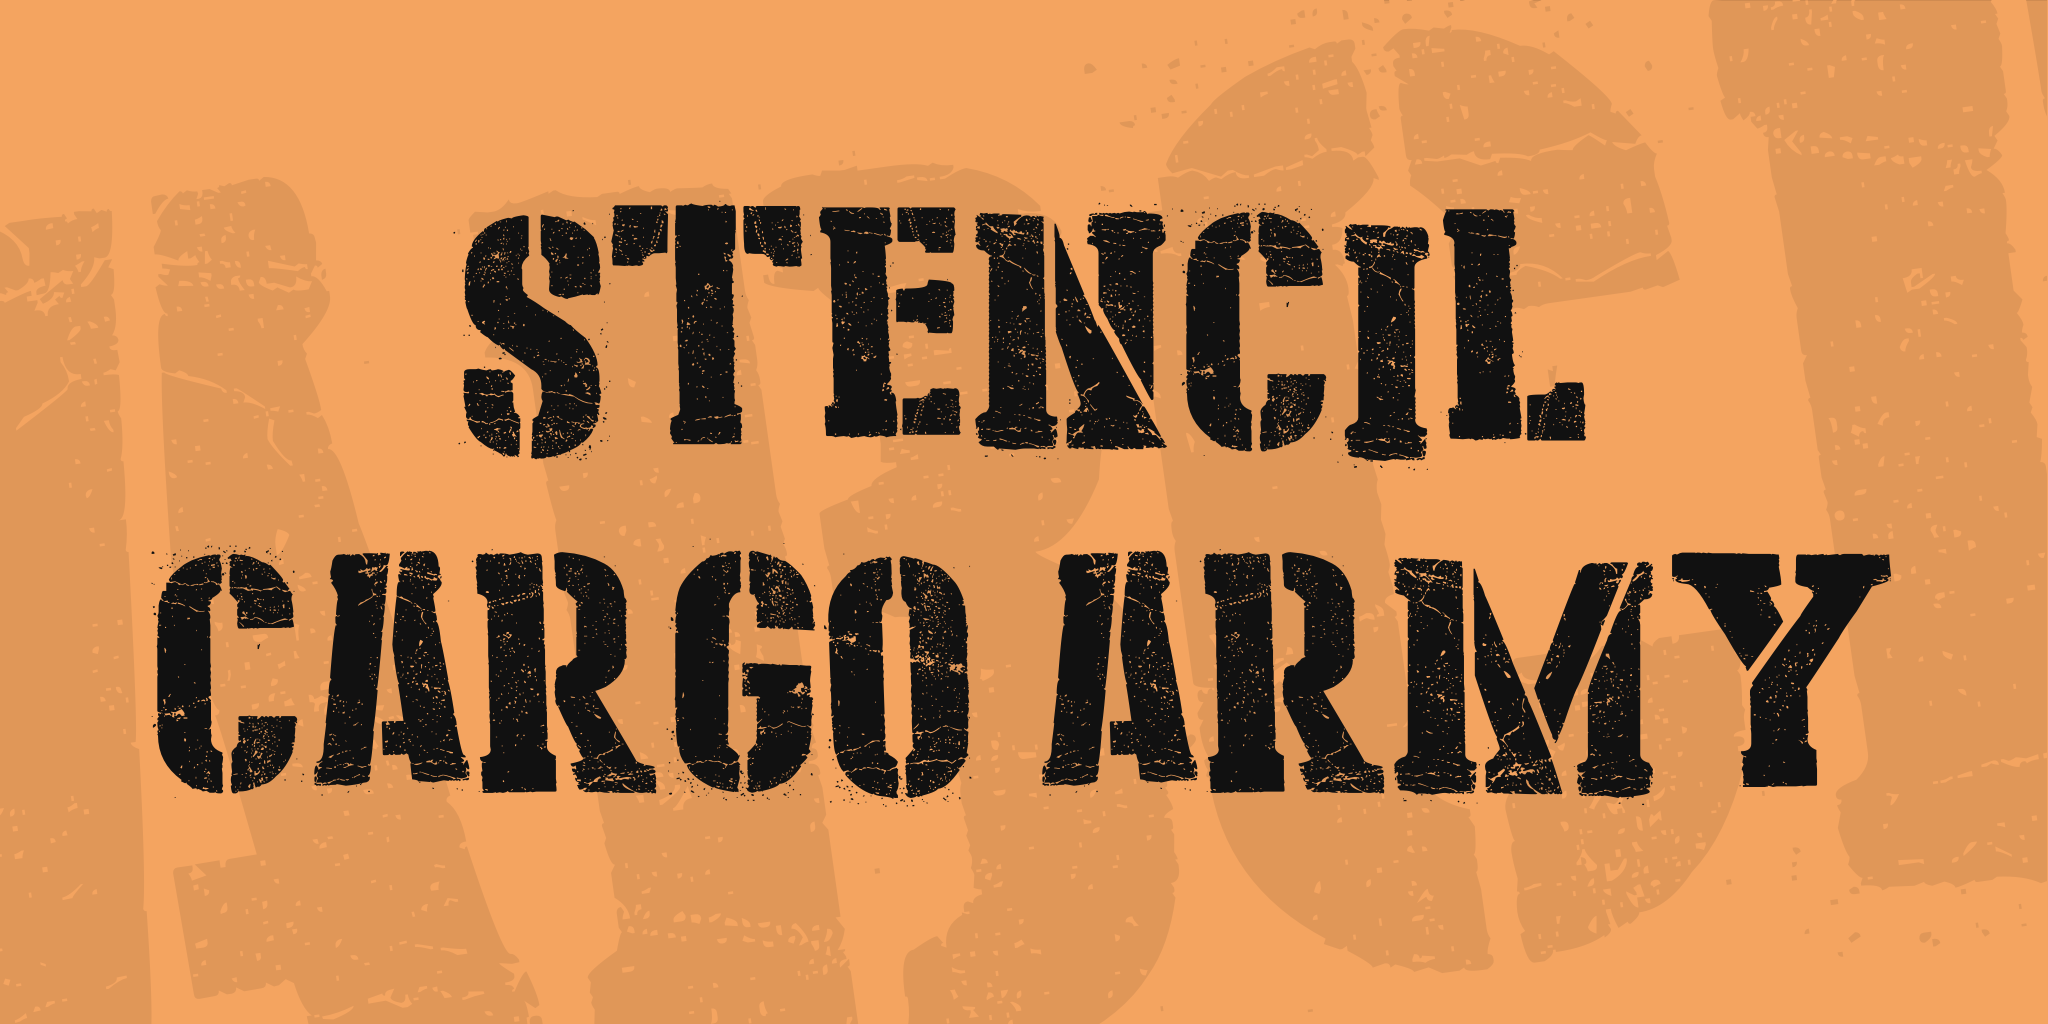 Stencil Cargo Army